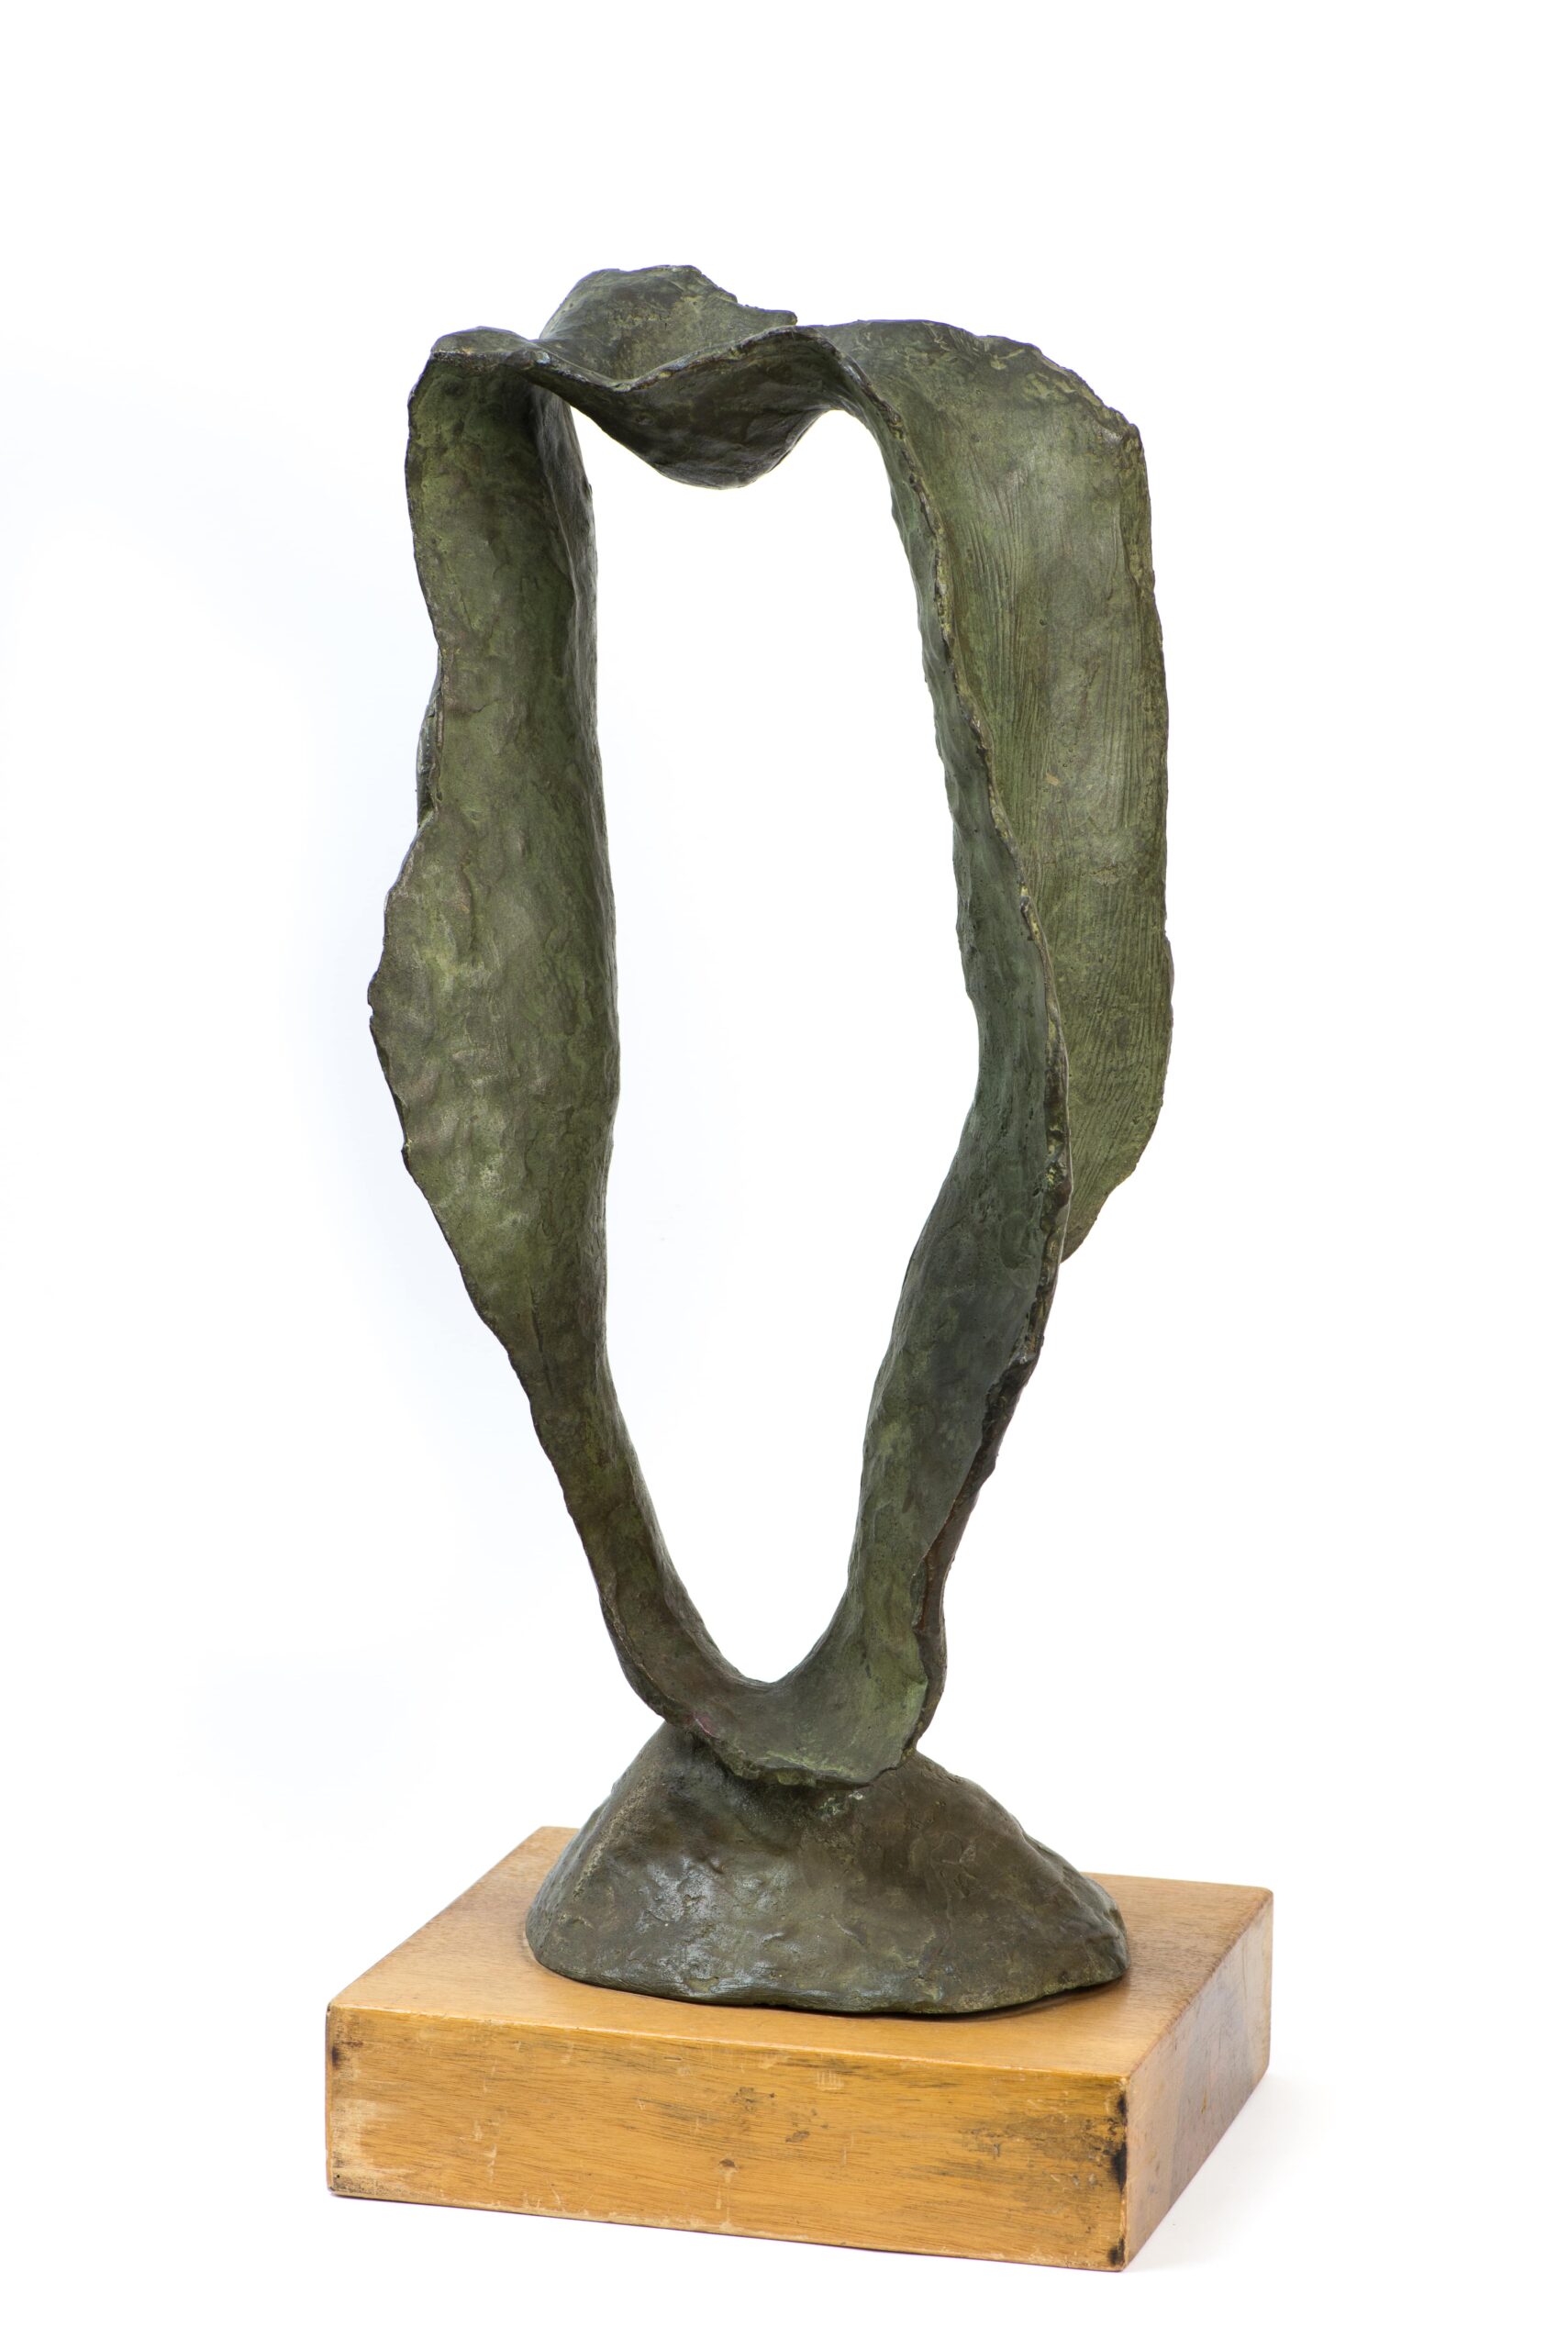 Arturo MartiniAtmosfera di una testa, 1944 41 x 17.5 x 13 cm Museo del Paesaggio, Verbania Pallanza, provenienza raccolta Egle Rosmini